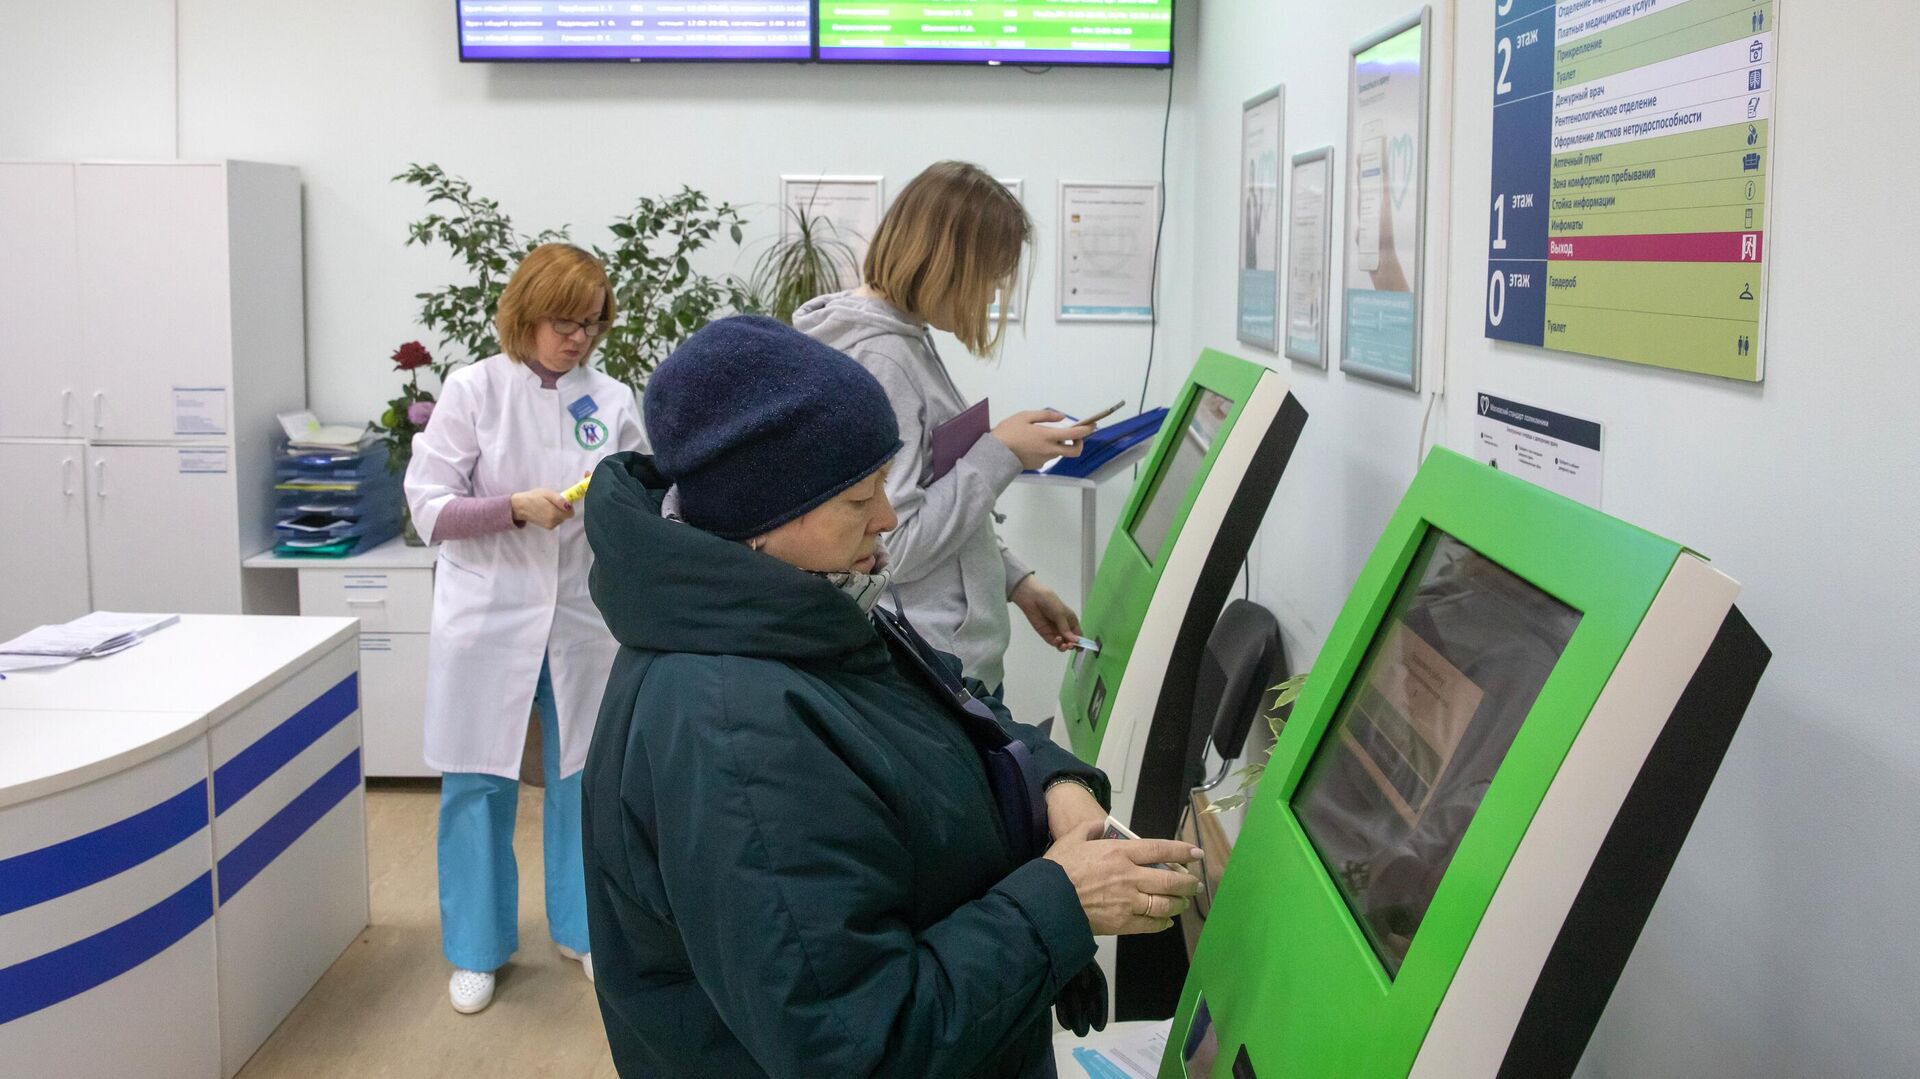  Пациенты записываются на прием к врачу через электронные терминалы в Москве   - РИА Новости, 1920, 18.10.2021